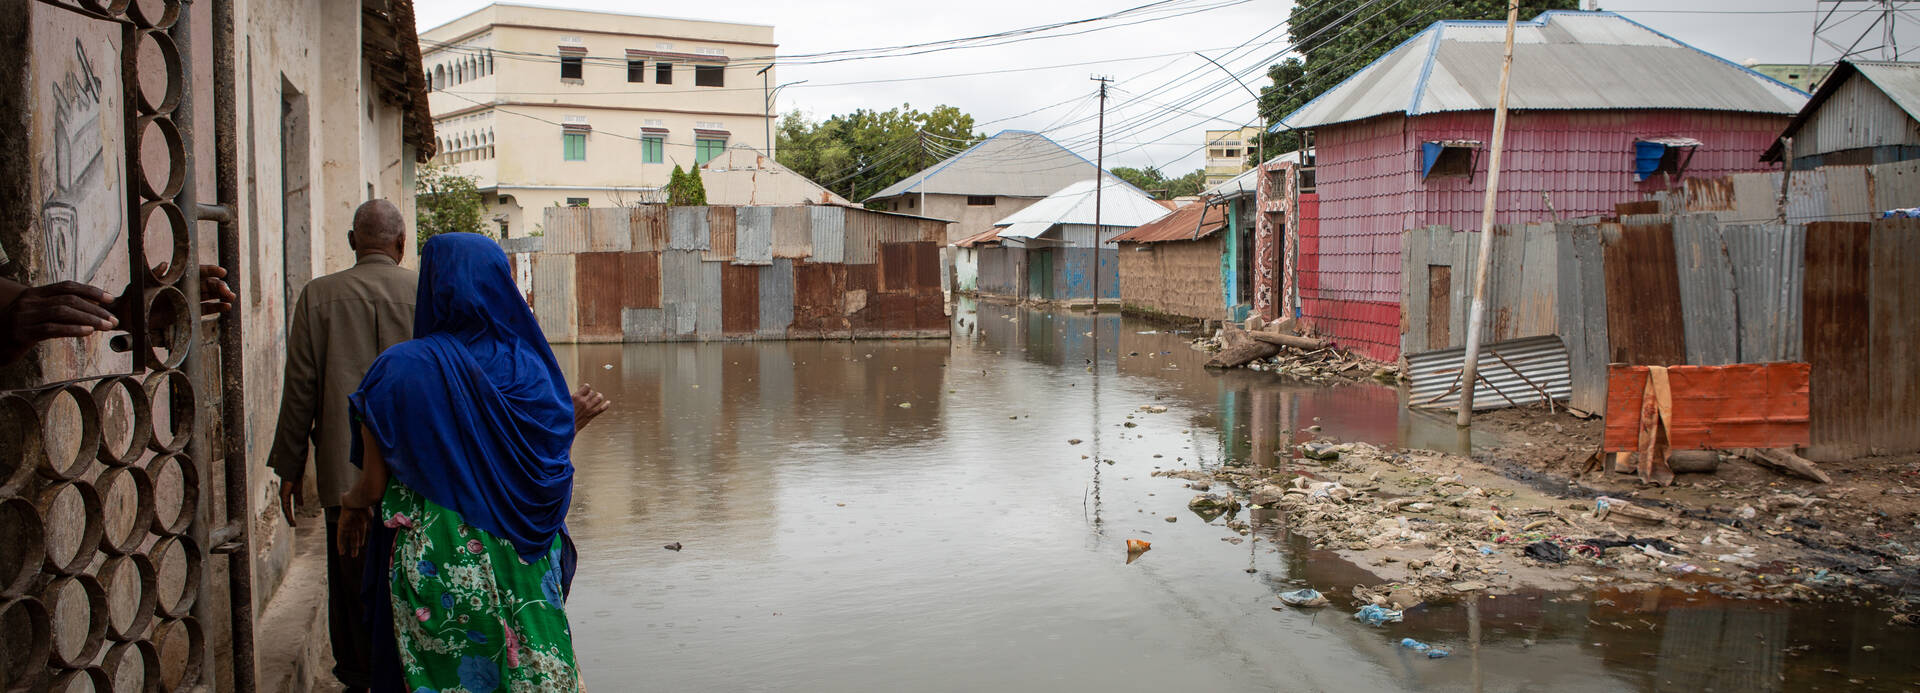 Überflutete Straßen in Somalia 